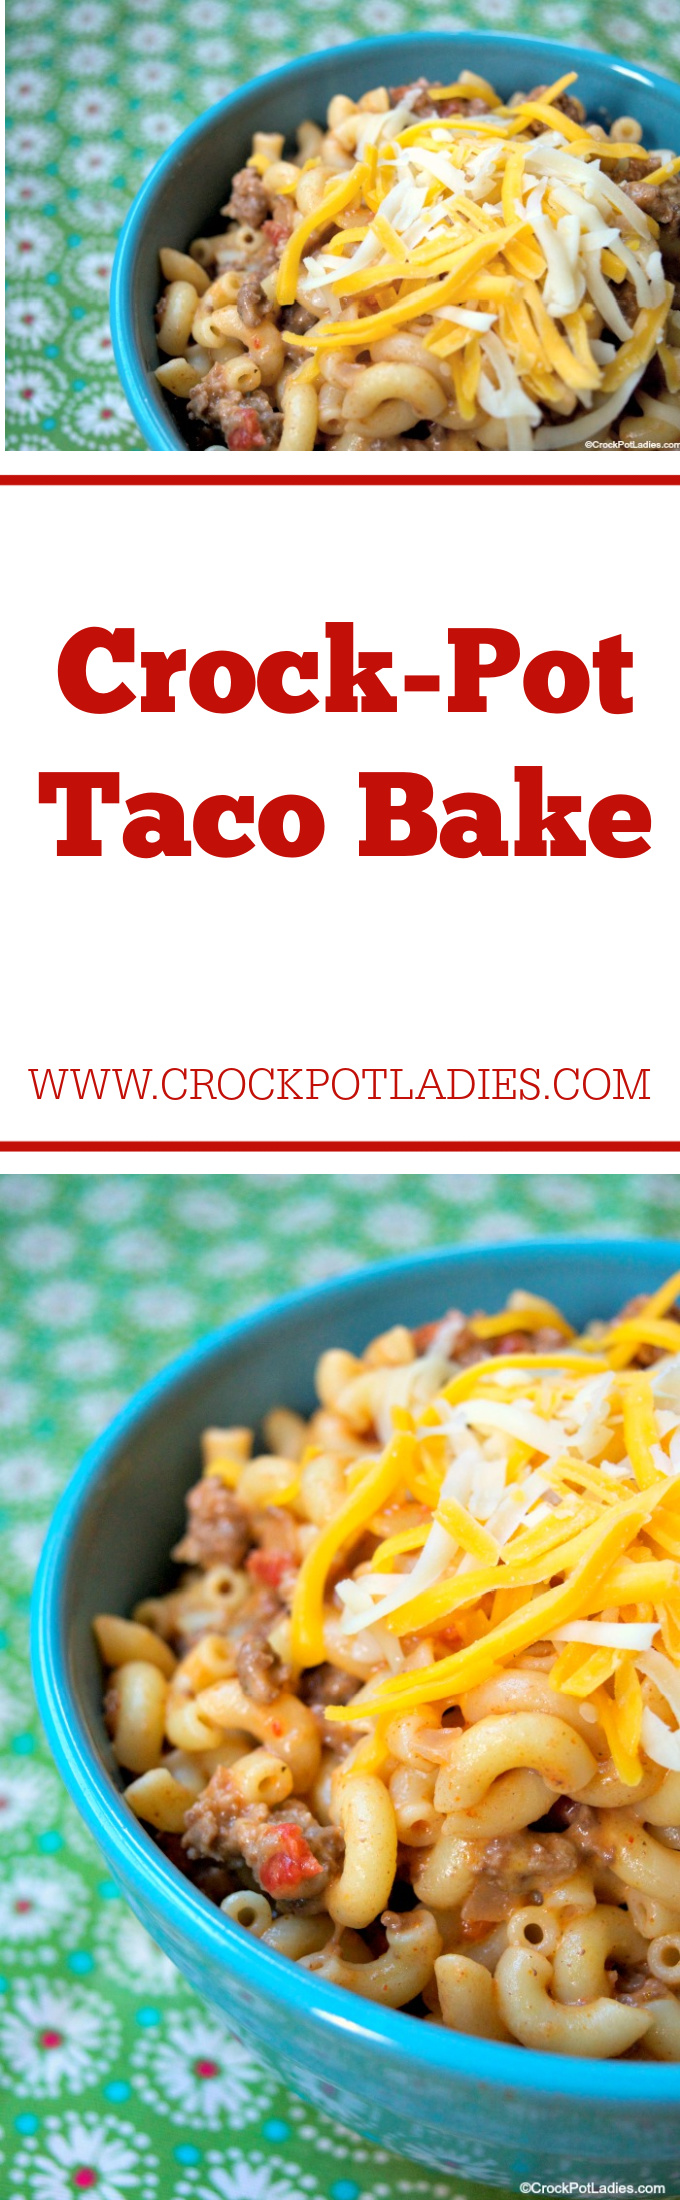 Crock-Pot Taco Bake